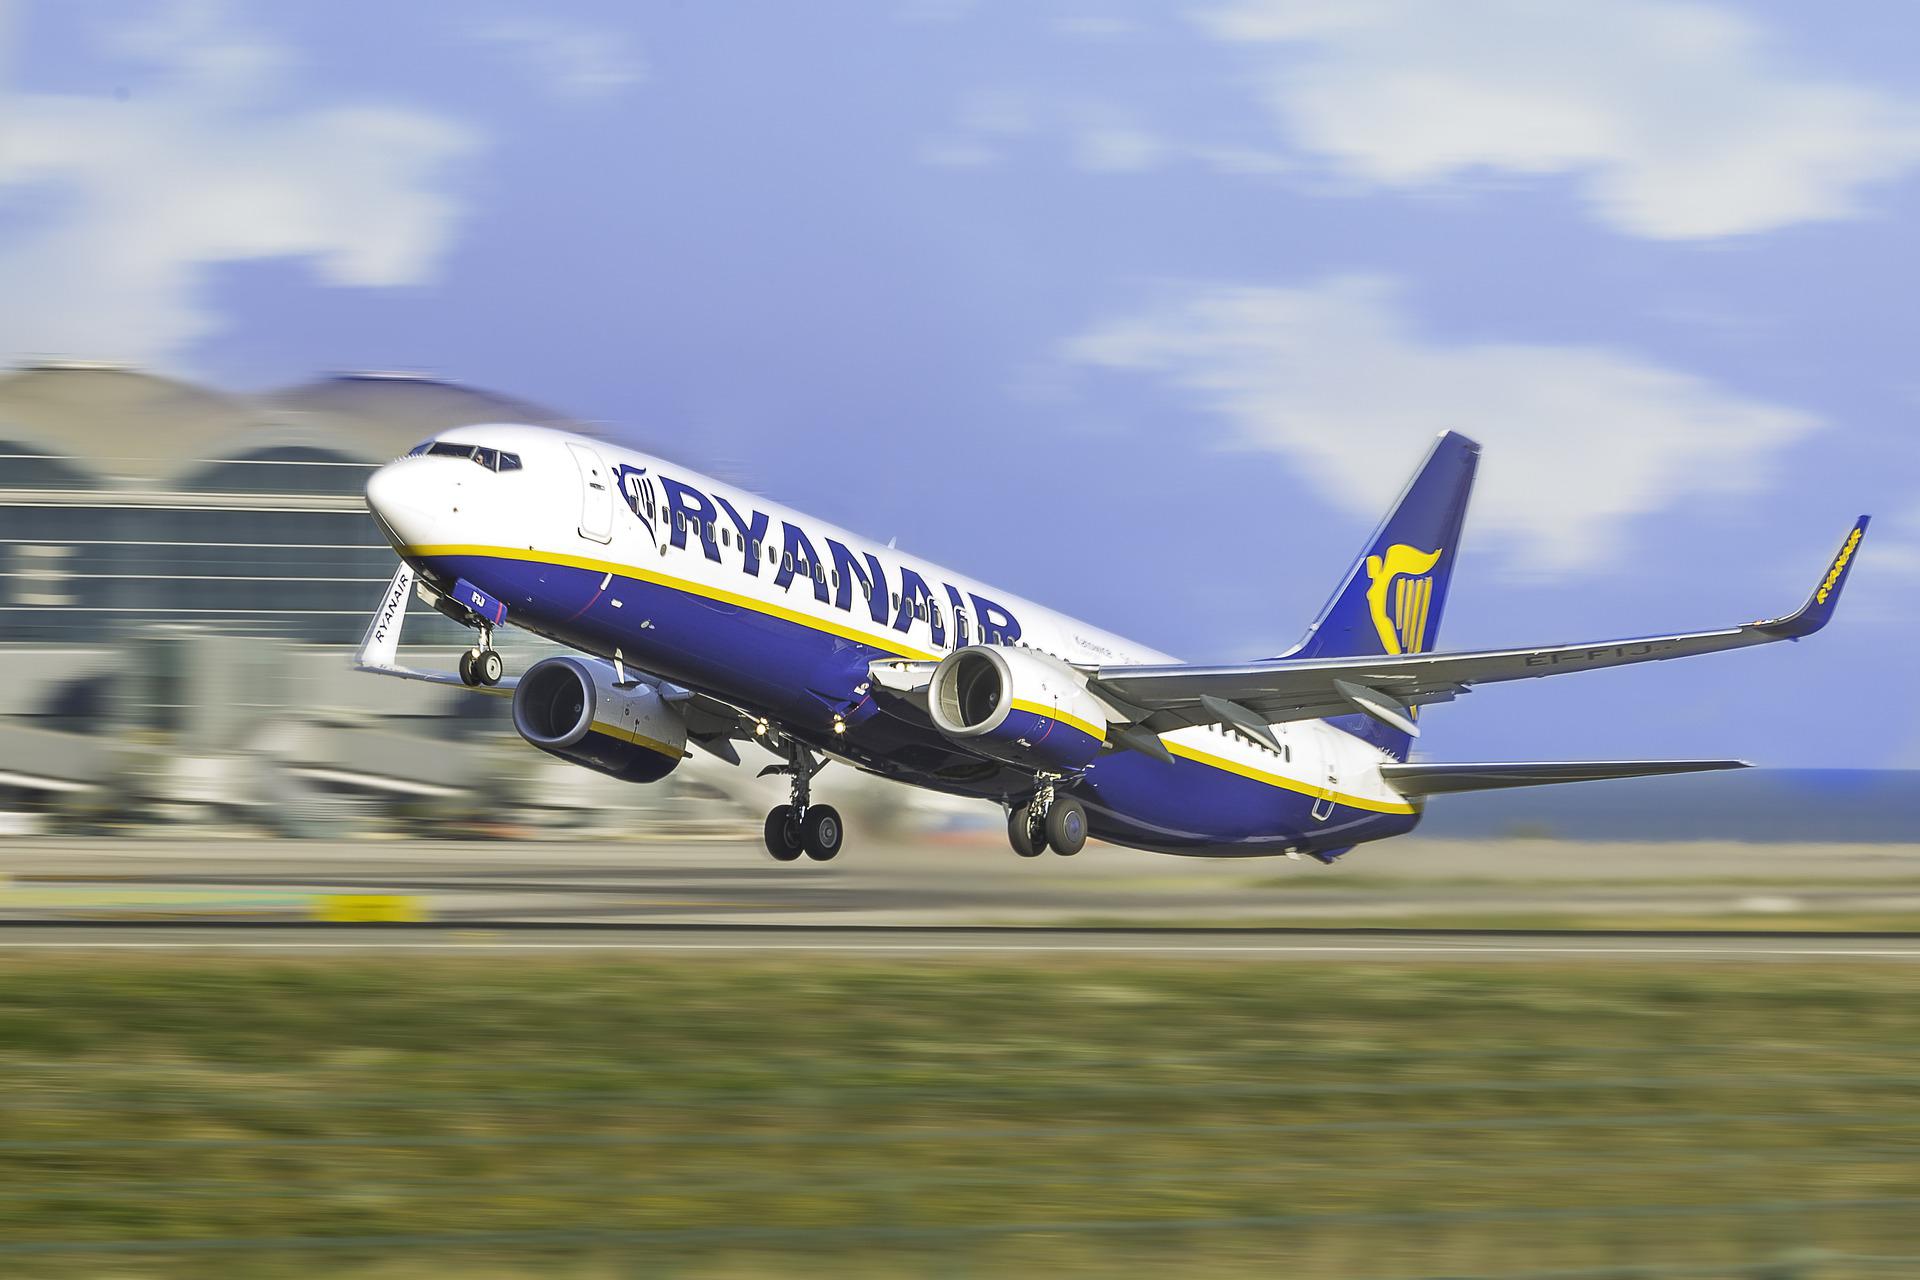 Ryanair aircraft landing at an airport